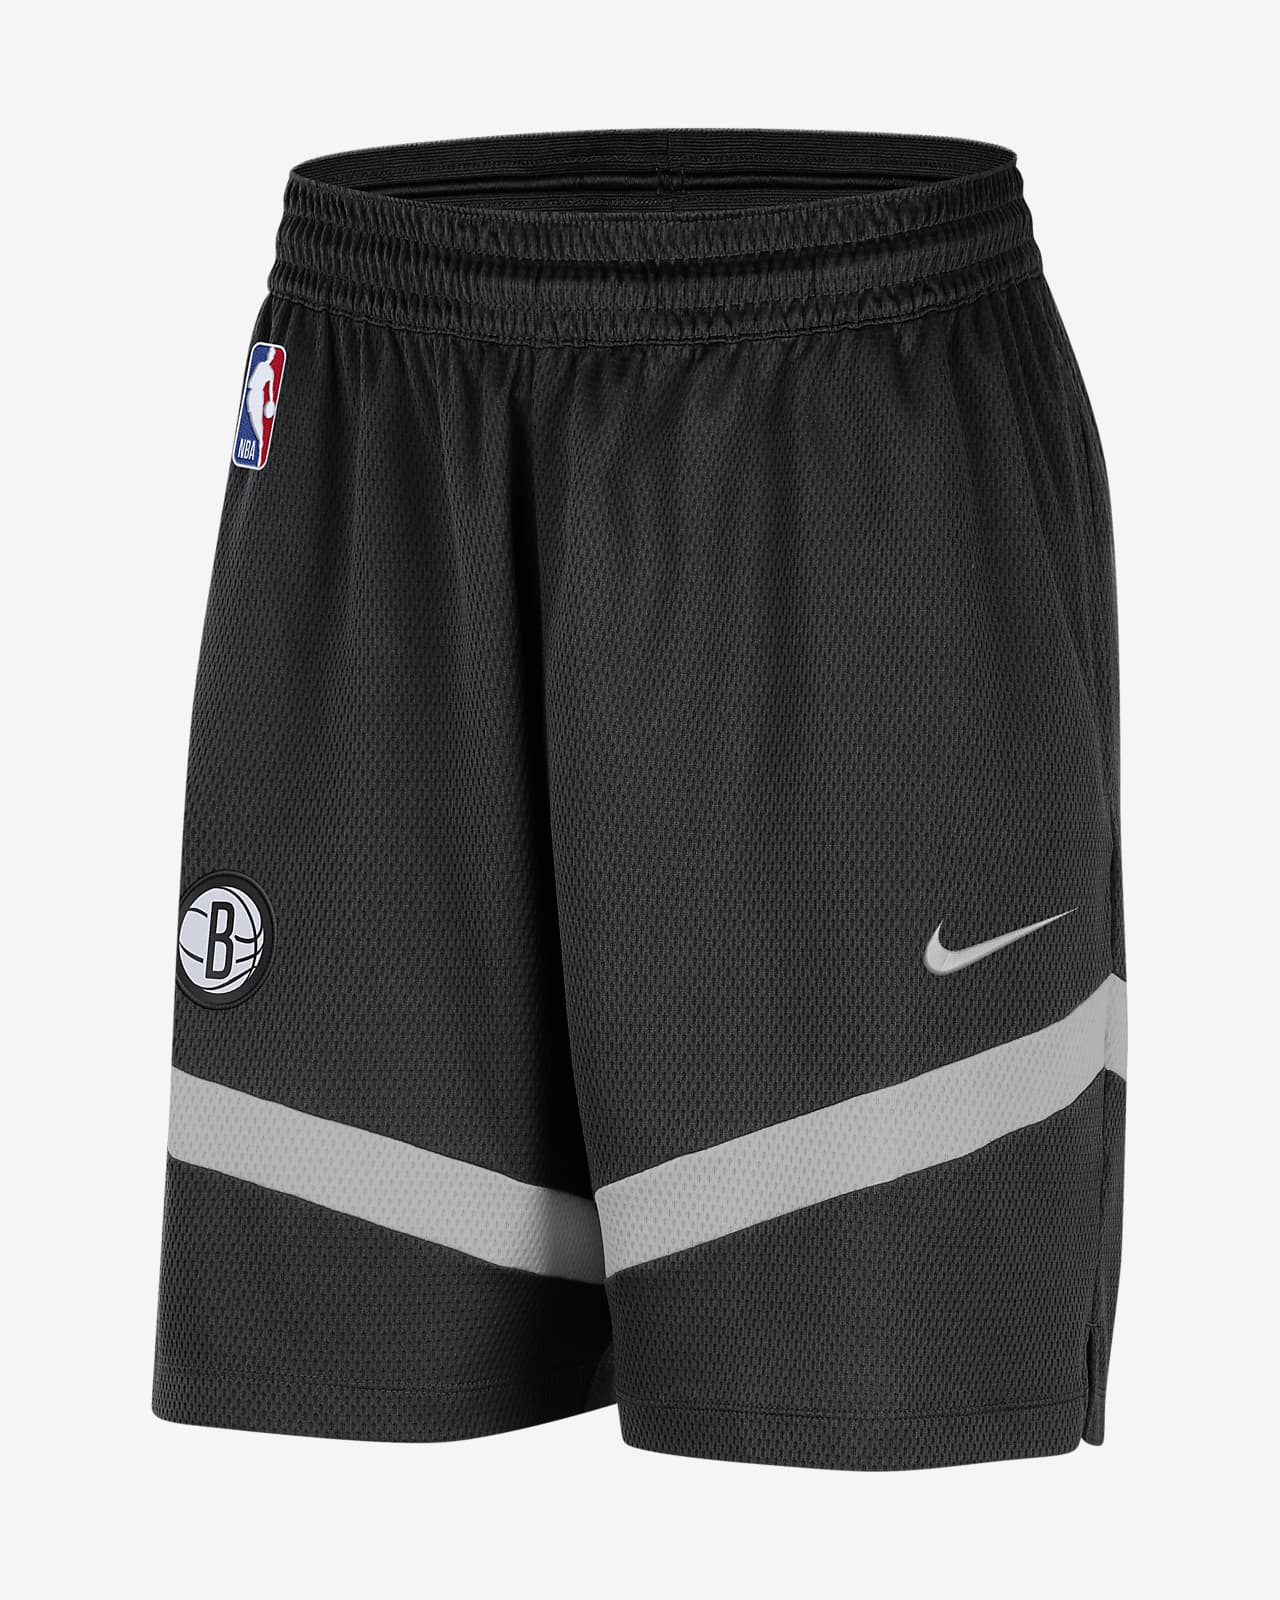 Nike NBA Brooklyn Nets Therma Flex Tearaway Pants India